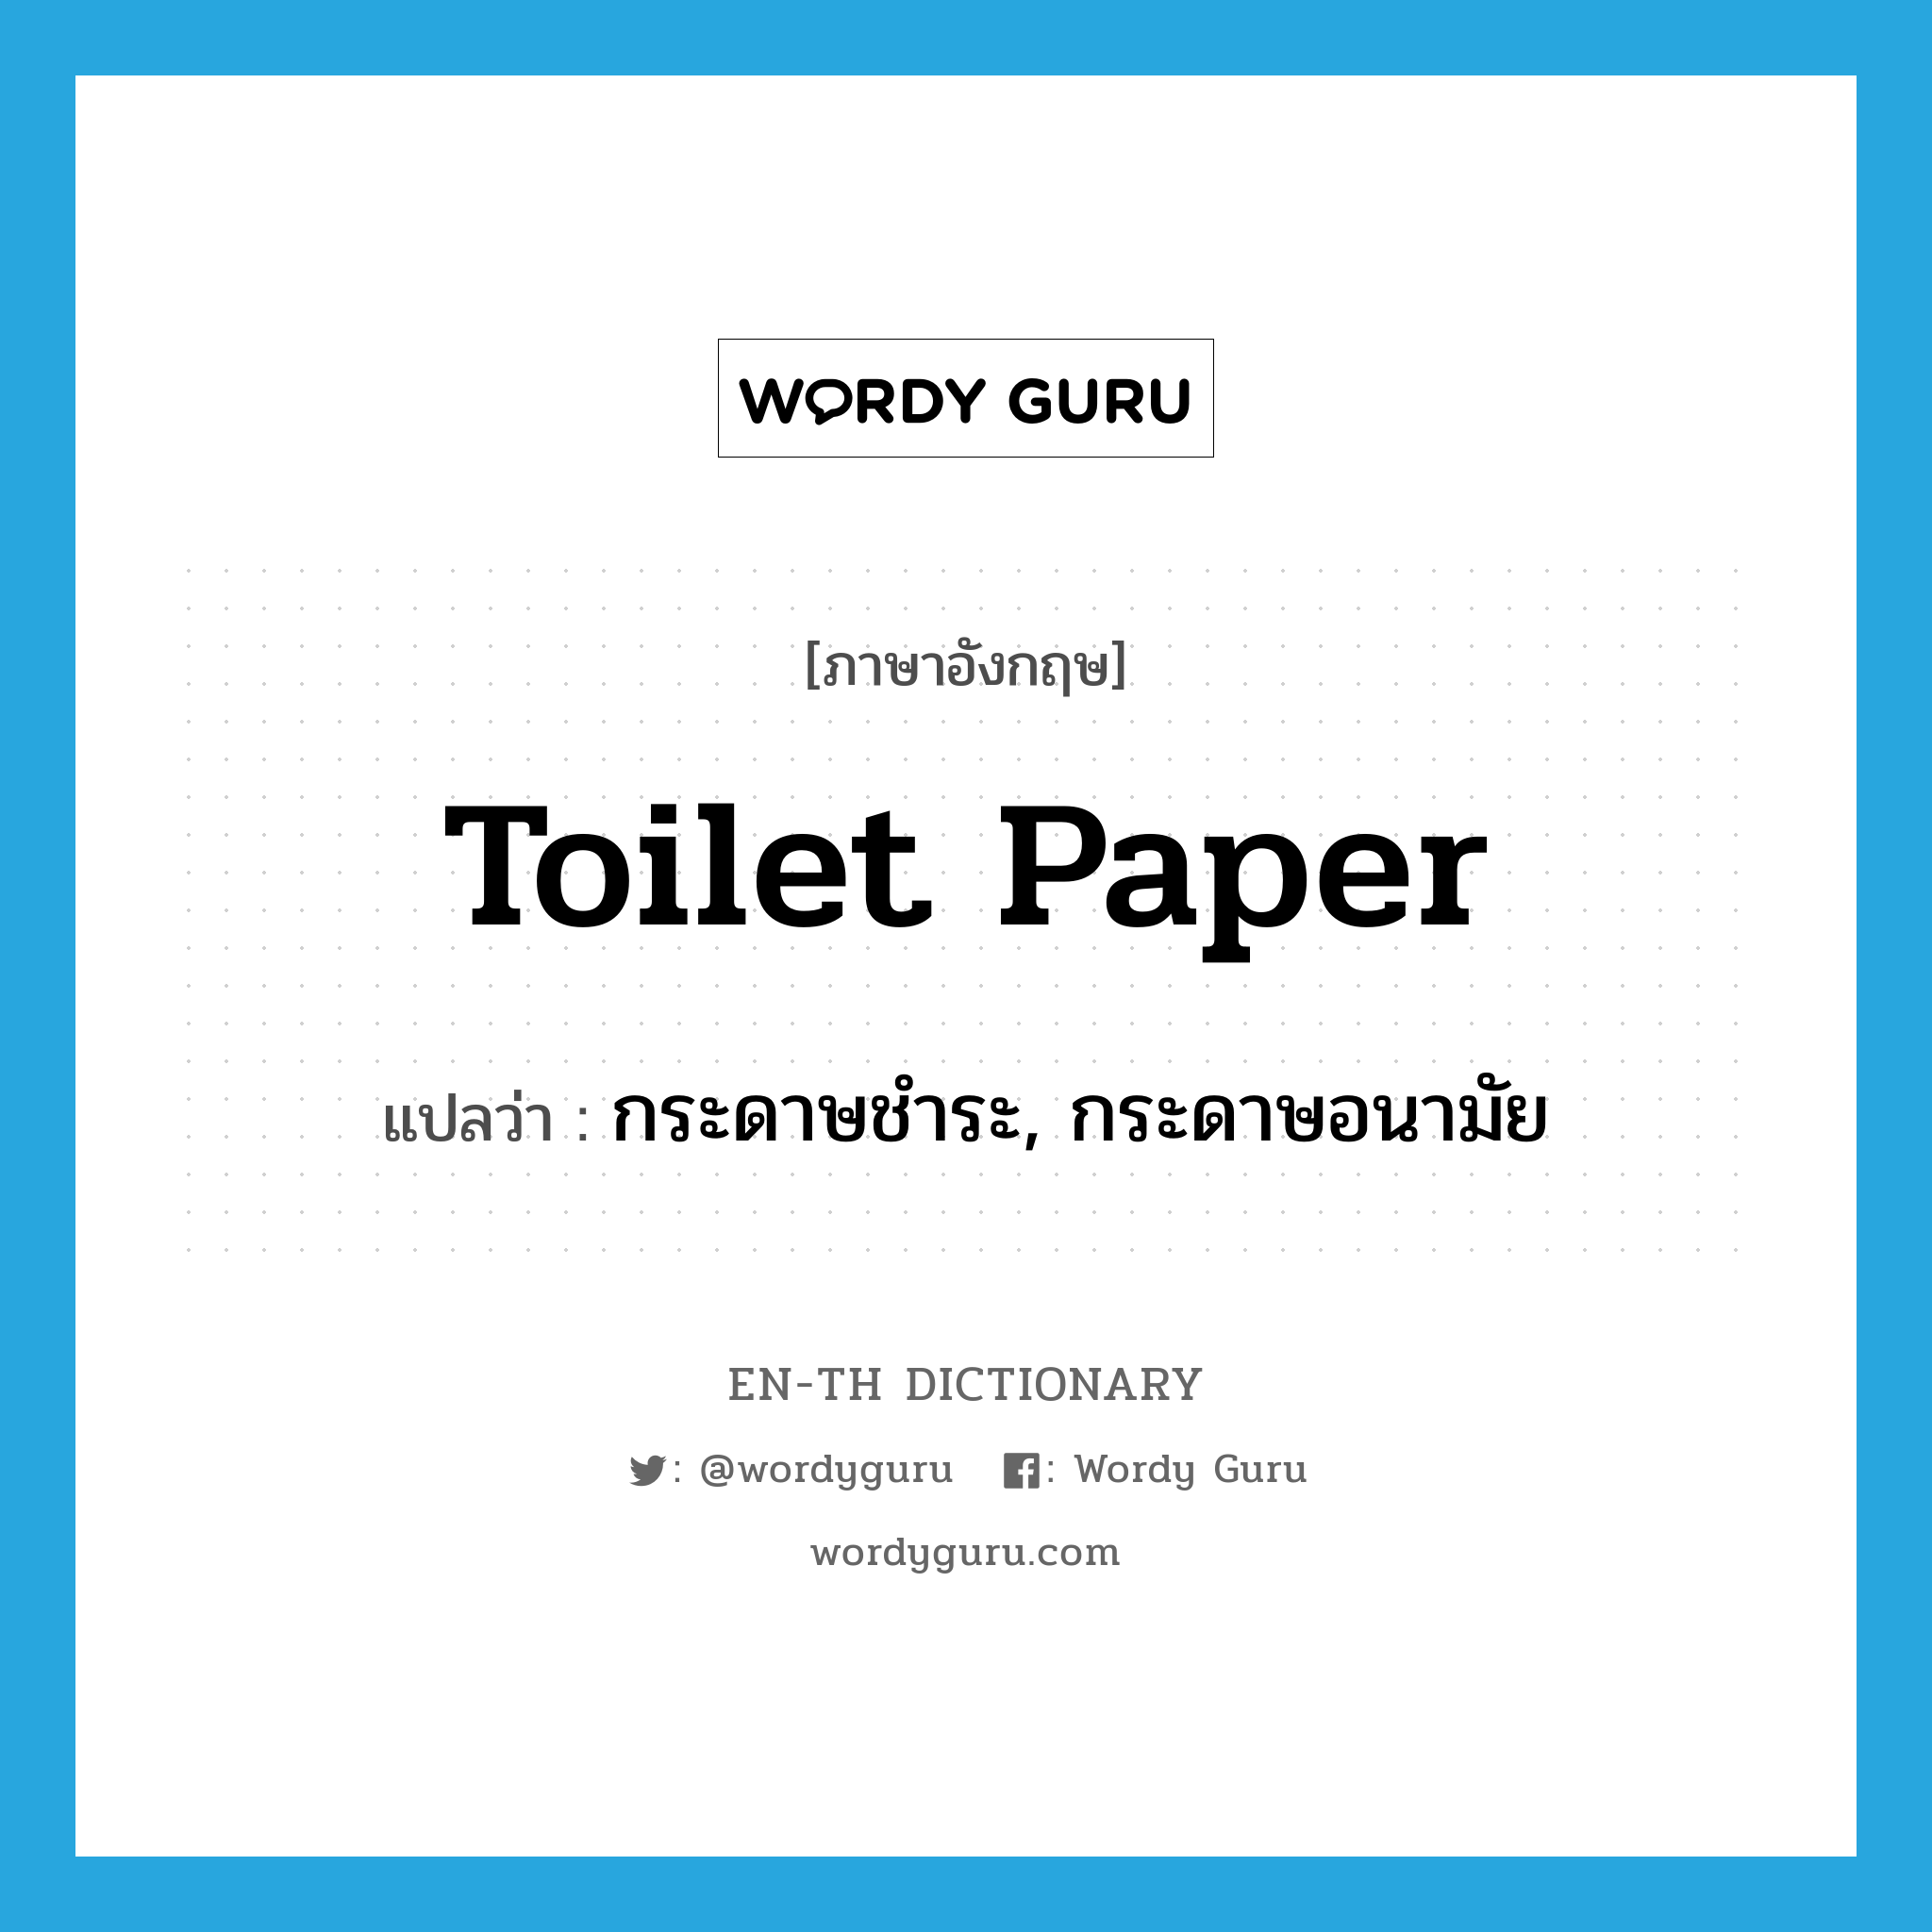 กระดาษชำระ, กระดาษอนามัย ภาษาอังกฤษ?, คำศัพท์ภาษาอังกฤษ กระดาษชำระ, กระดาษอนามัย แปลว่า toilet paper ประเภท N หมวด N